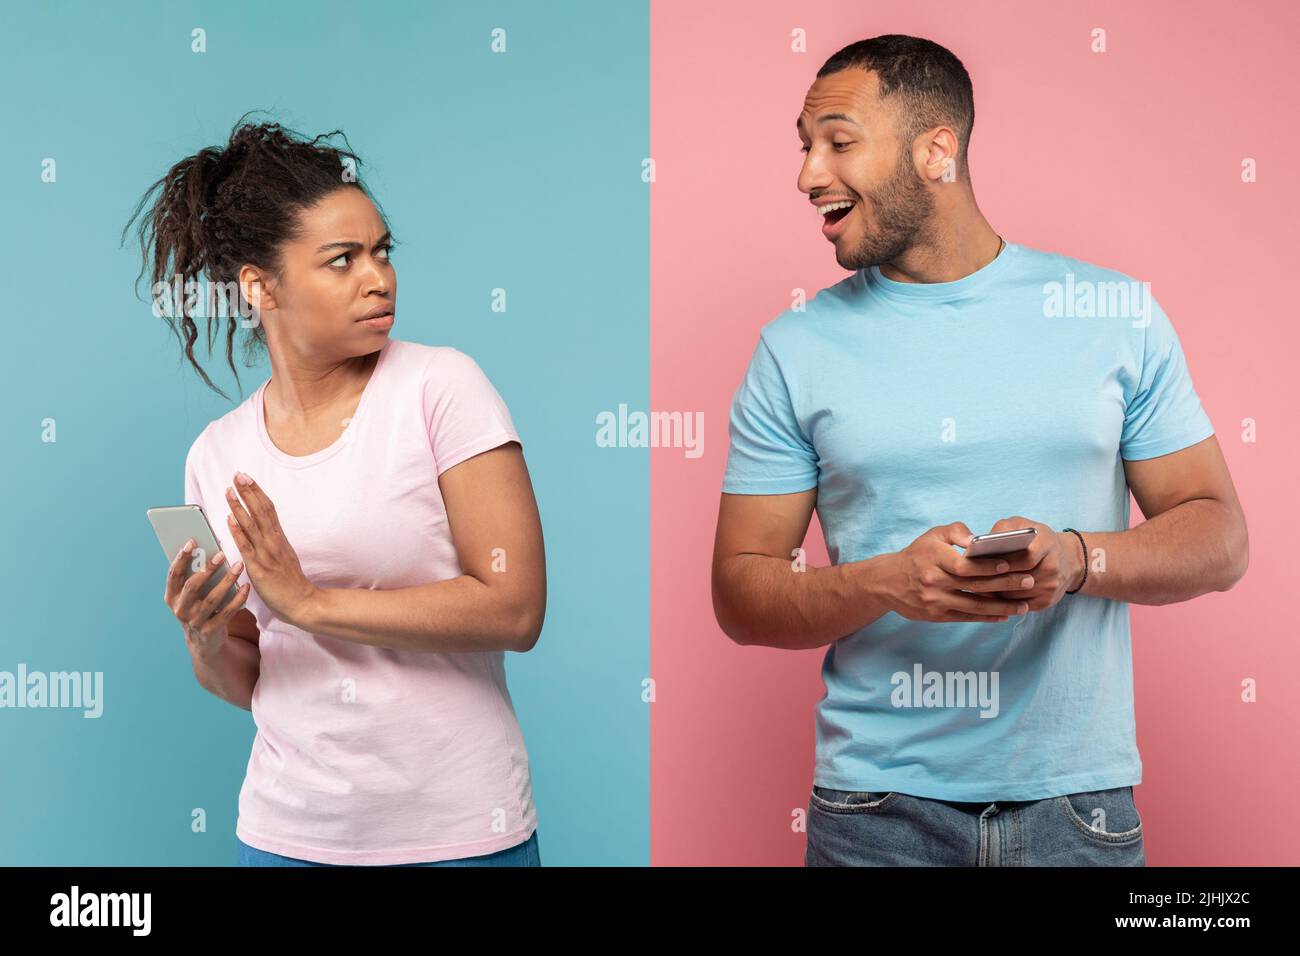 Datenschutzkonzept. afroamerikanischer Mann, der versucht, auf das Handy seiner Freundin zu schauen, und eine Dame, die den Bildschirm ihres Telefons versteckt Stockfoto